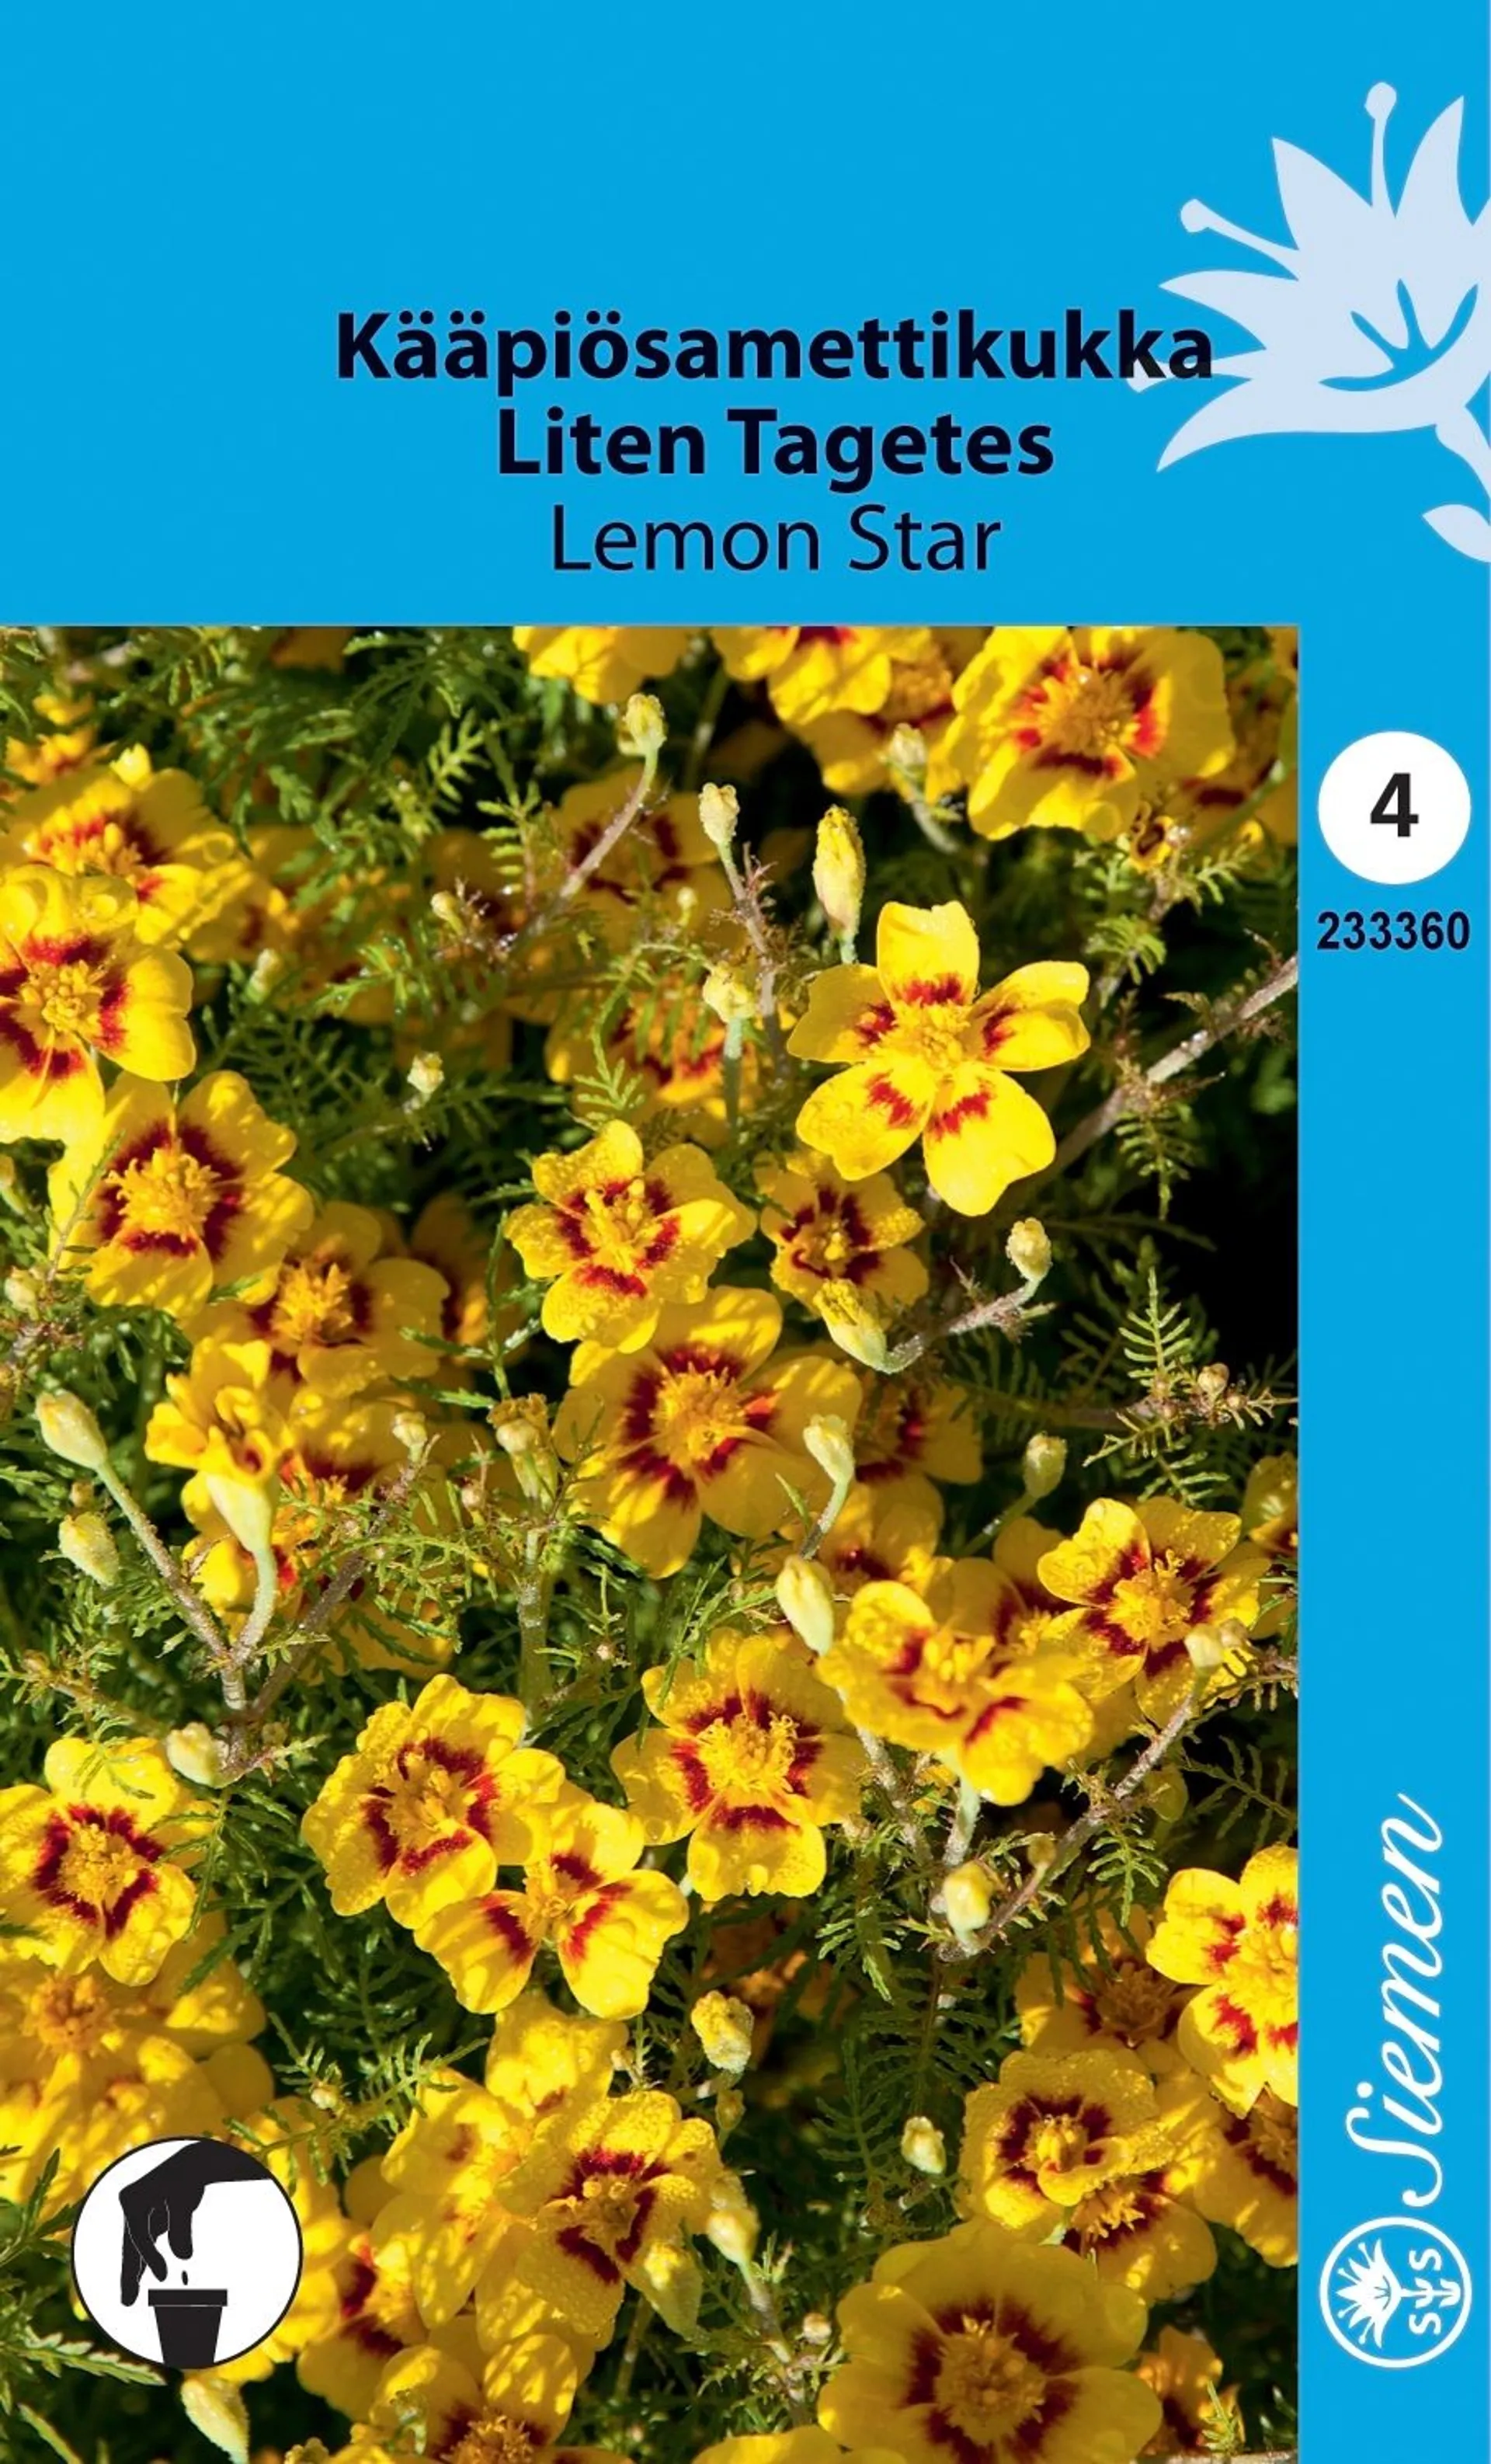 Kääpiösamettikukka Lemon Star